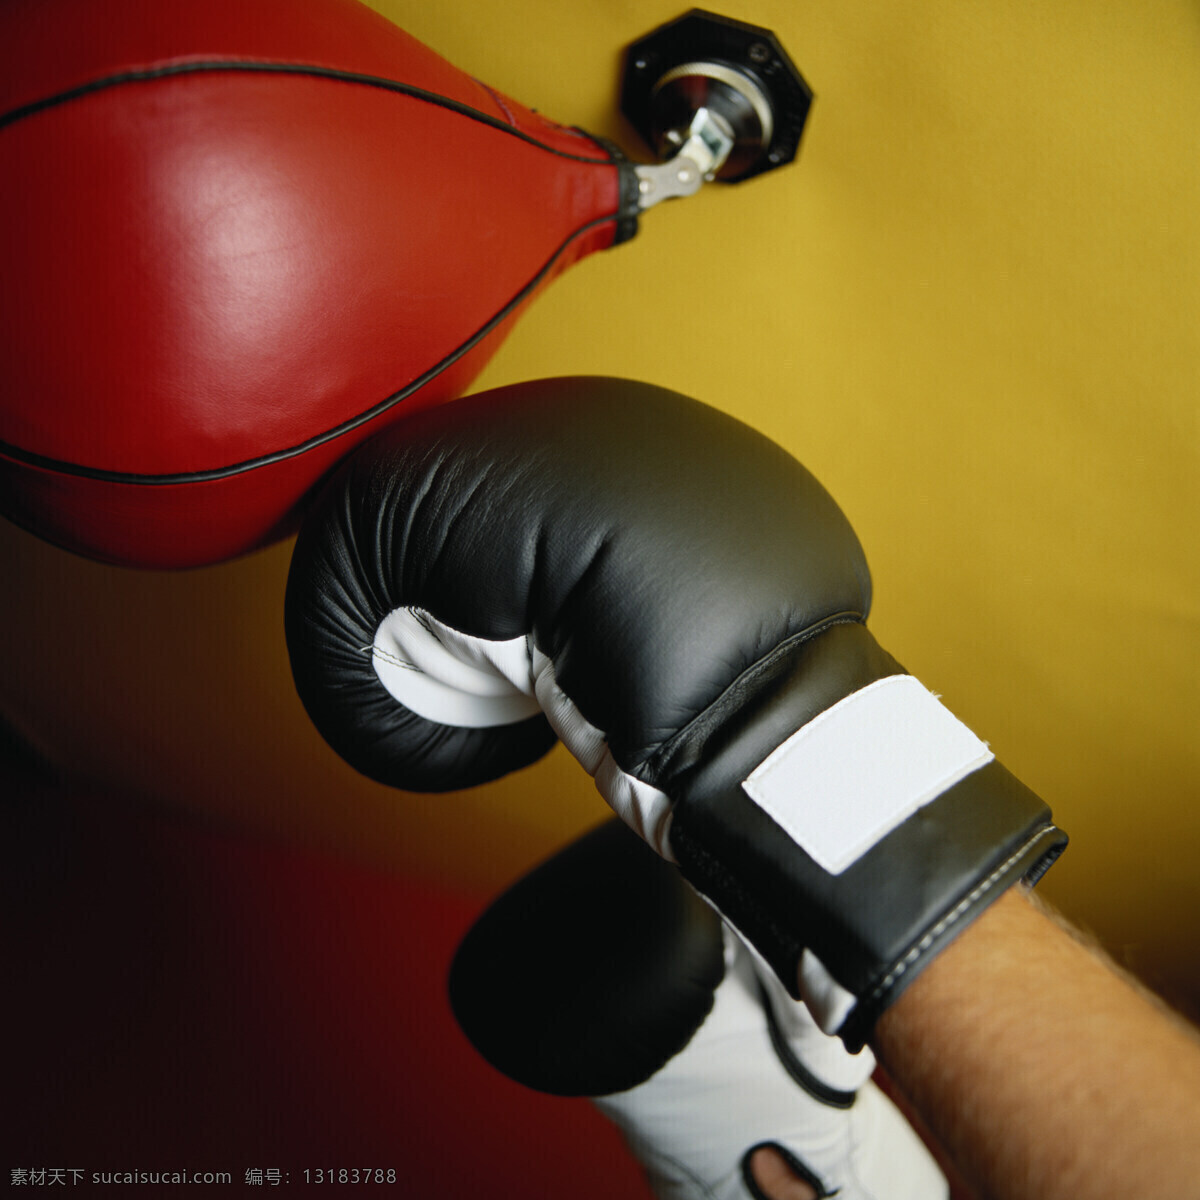 拳击 收受 手套 红色 梨球 黑色 黑人 欧美 体育运动 文化艺术